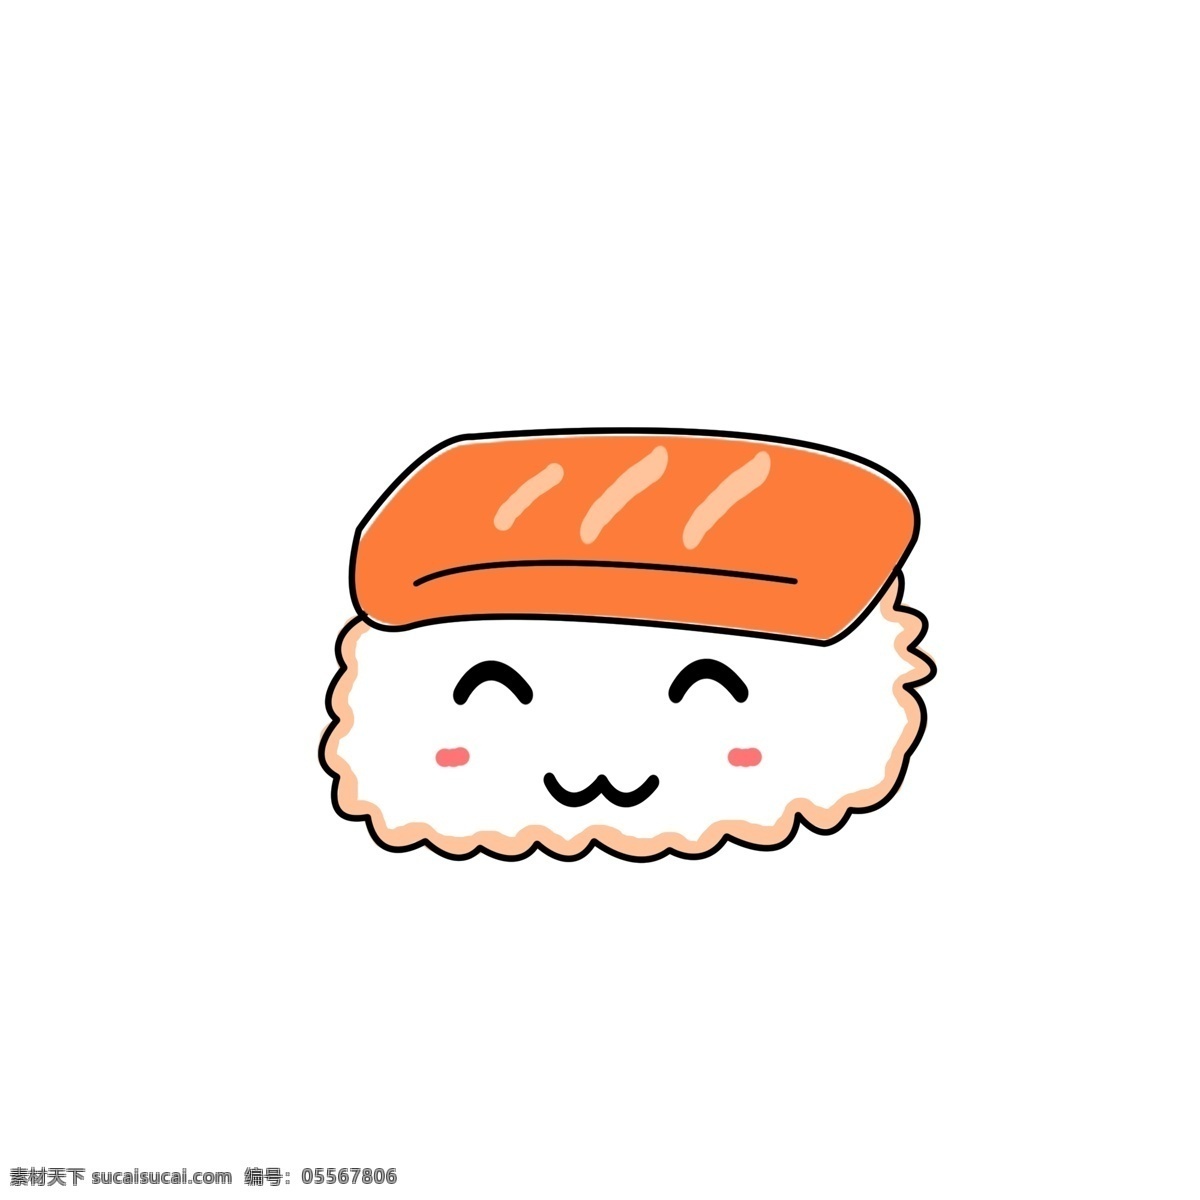 简约 创意 可爱 卡通 手绘 三文鱼 寿司 食物 元素